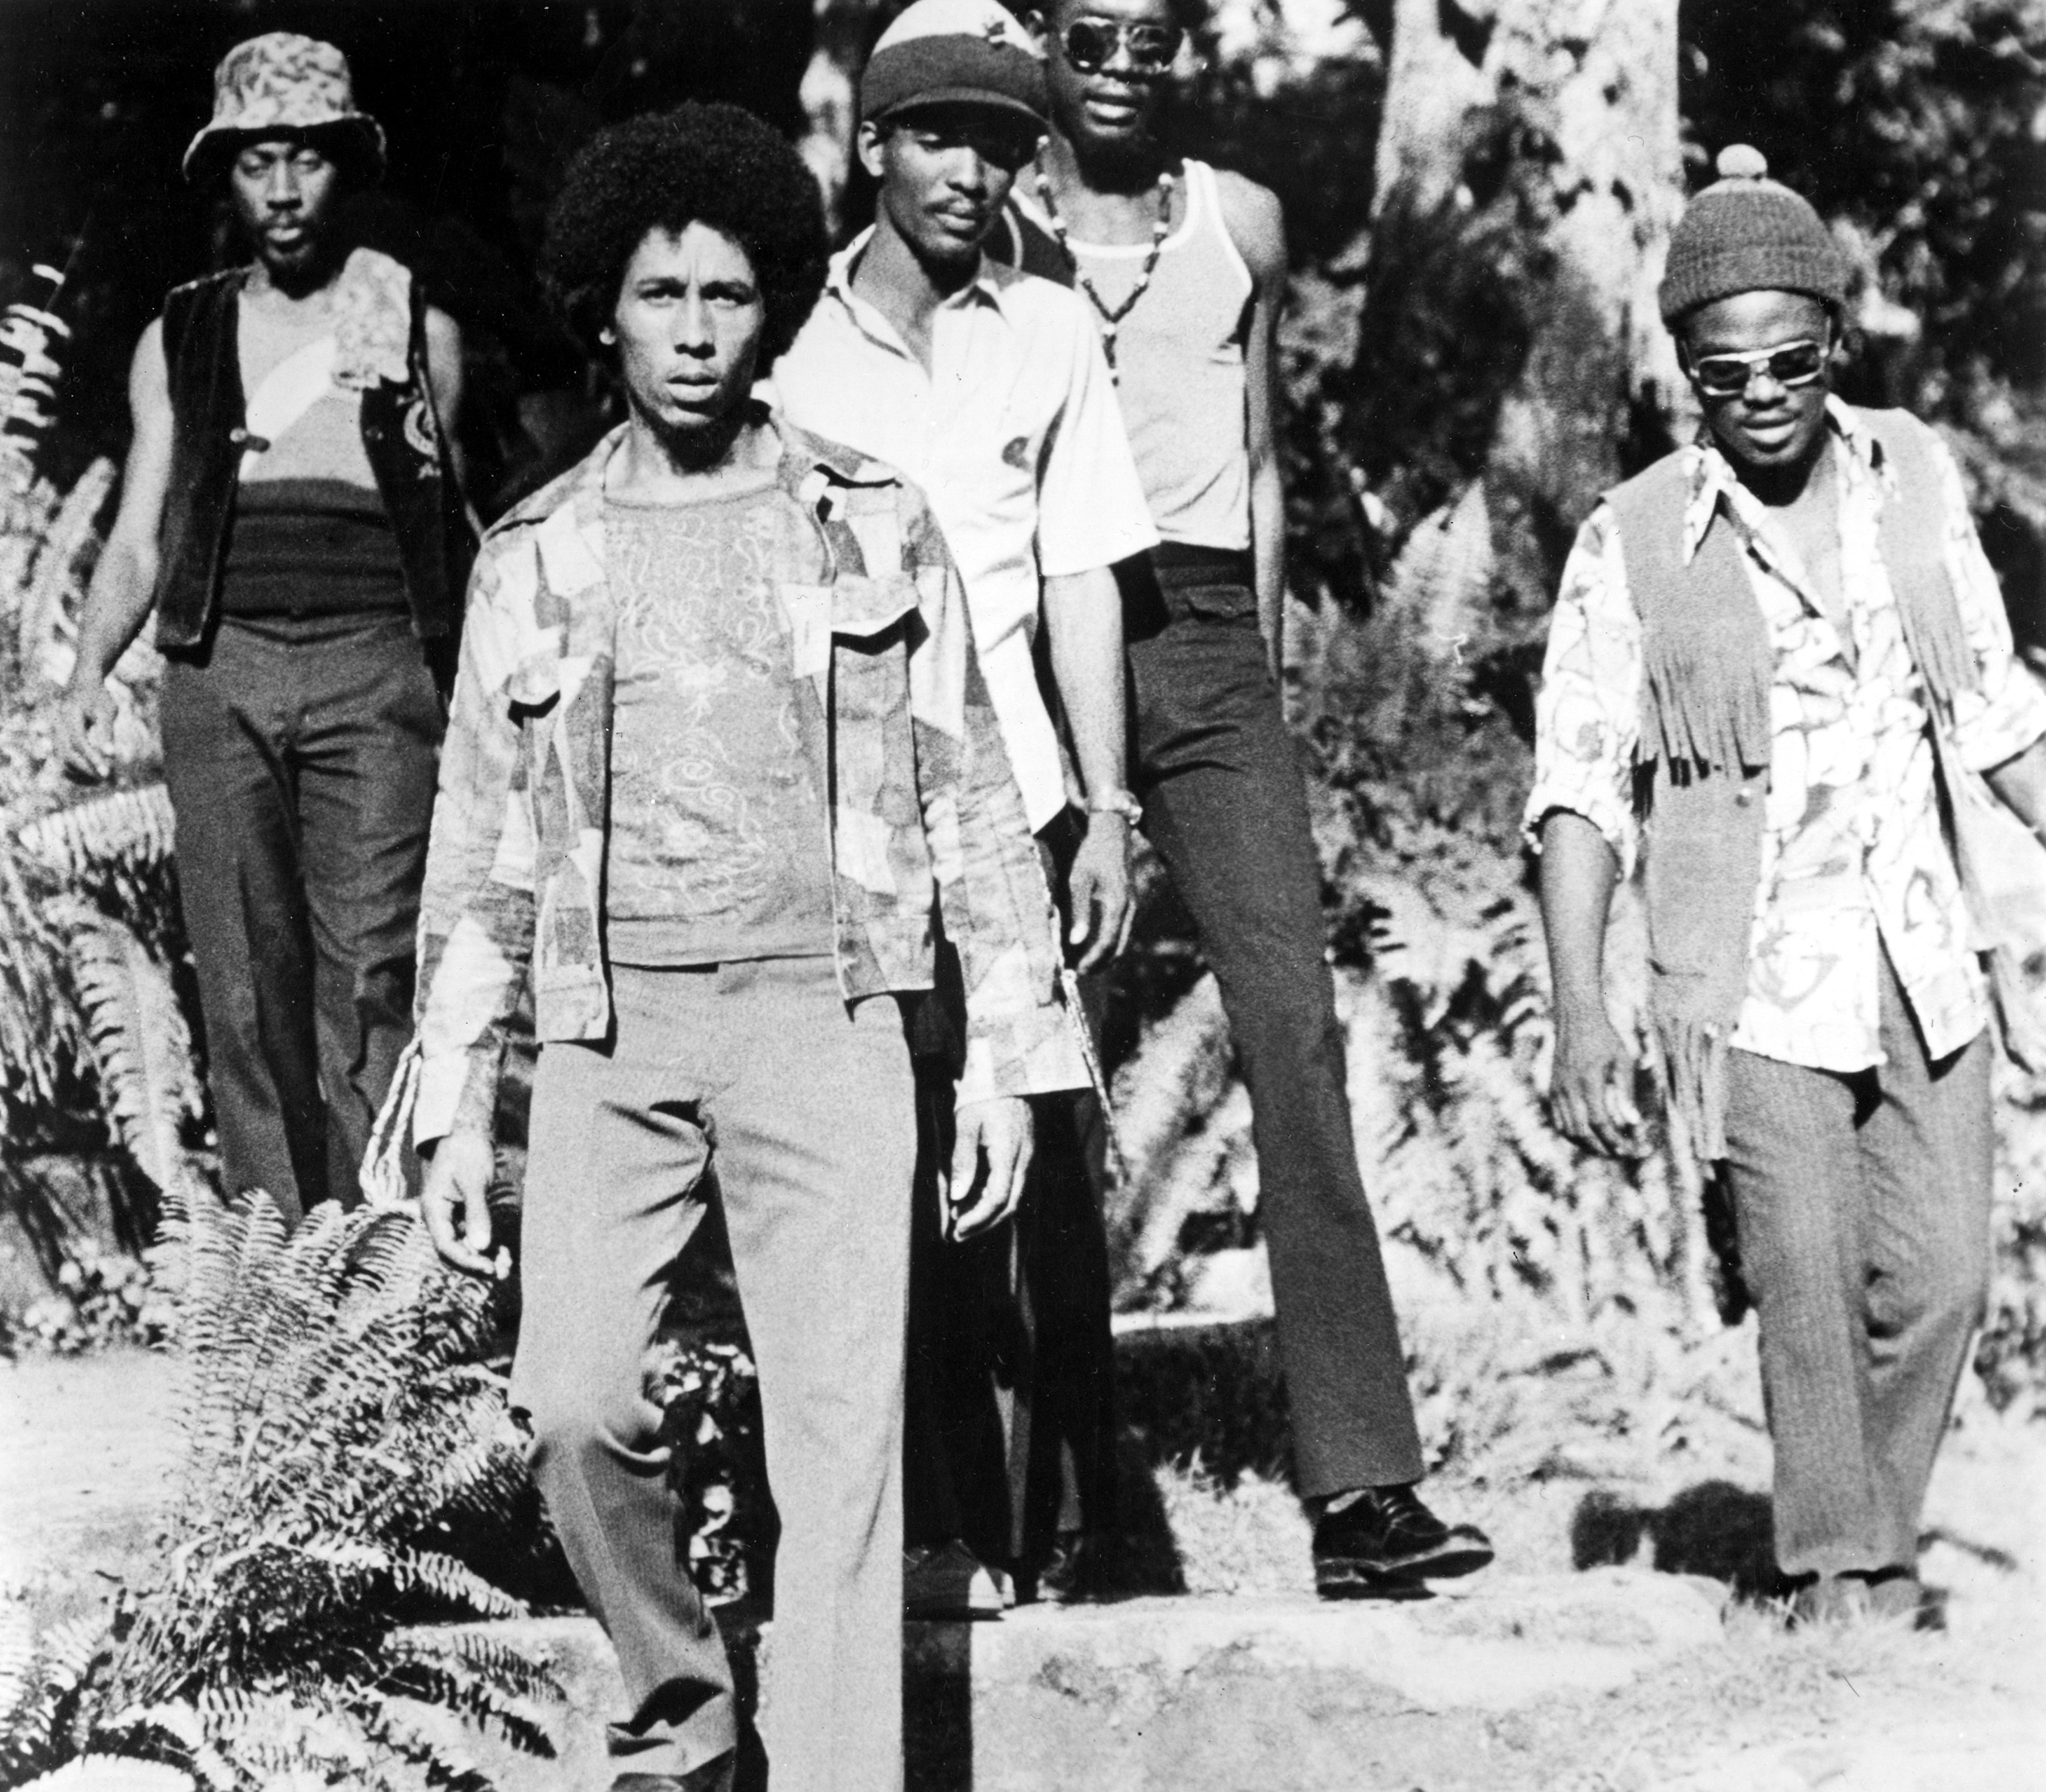 Bob Marley and the Wailers nel 1972. Da sinistra a destra: Bunny Wailer, Bob Marley, Carlton Barrett, Peter Tosh e Aston Barrett, 